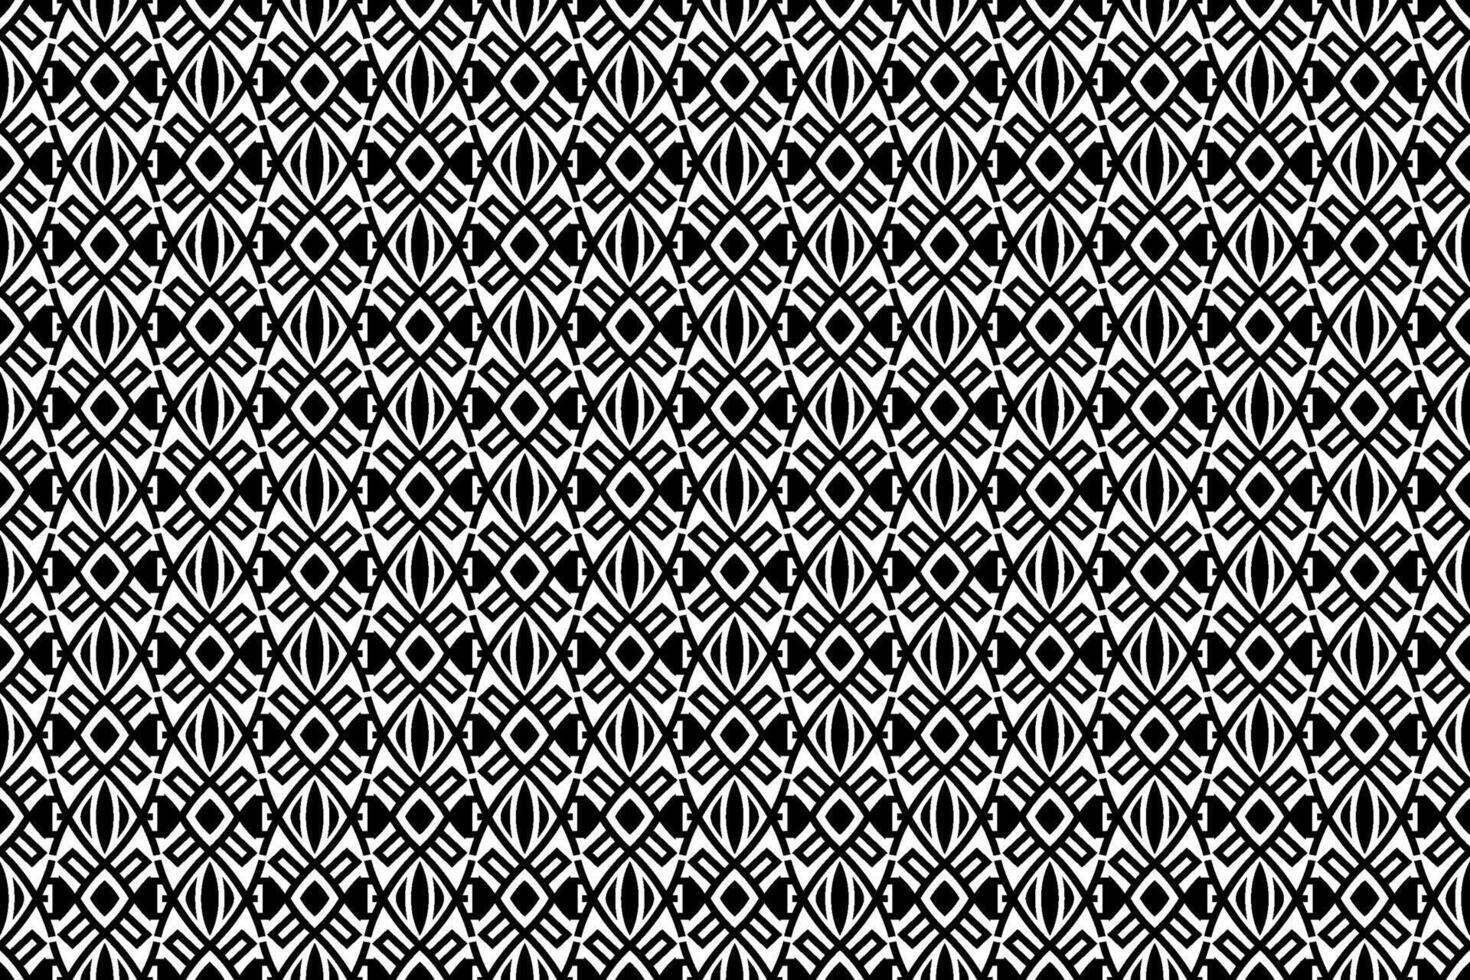 svartvit svart och vit mönster. abstrakt mosaik- textur för tyg, skriva ut, tabell trasa, baner, omslag, kort, scarf, mjuk möbel, inbjudan, dekoration, omslag papper, interiör, tapet. vektor